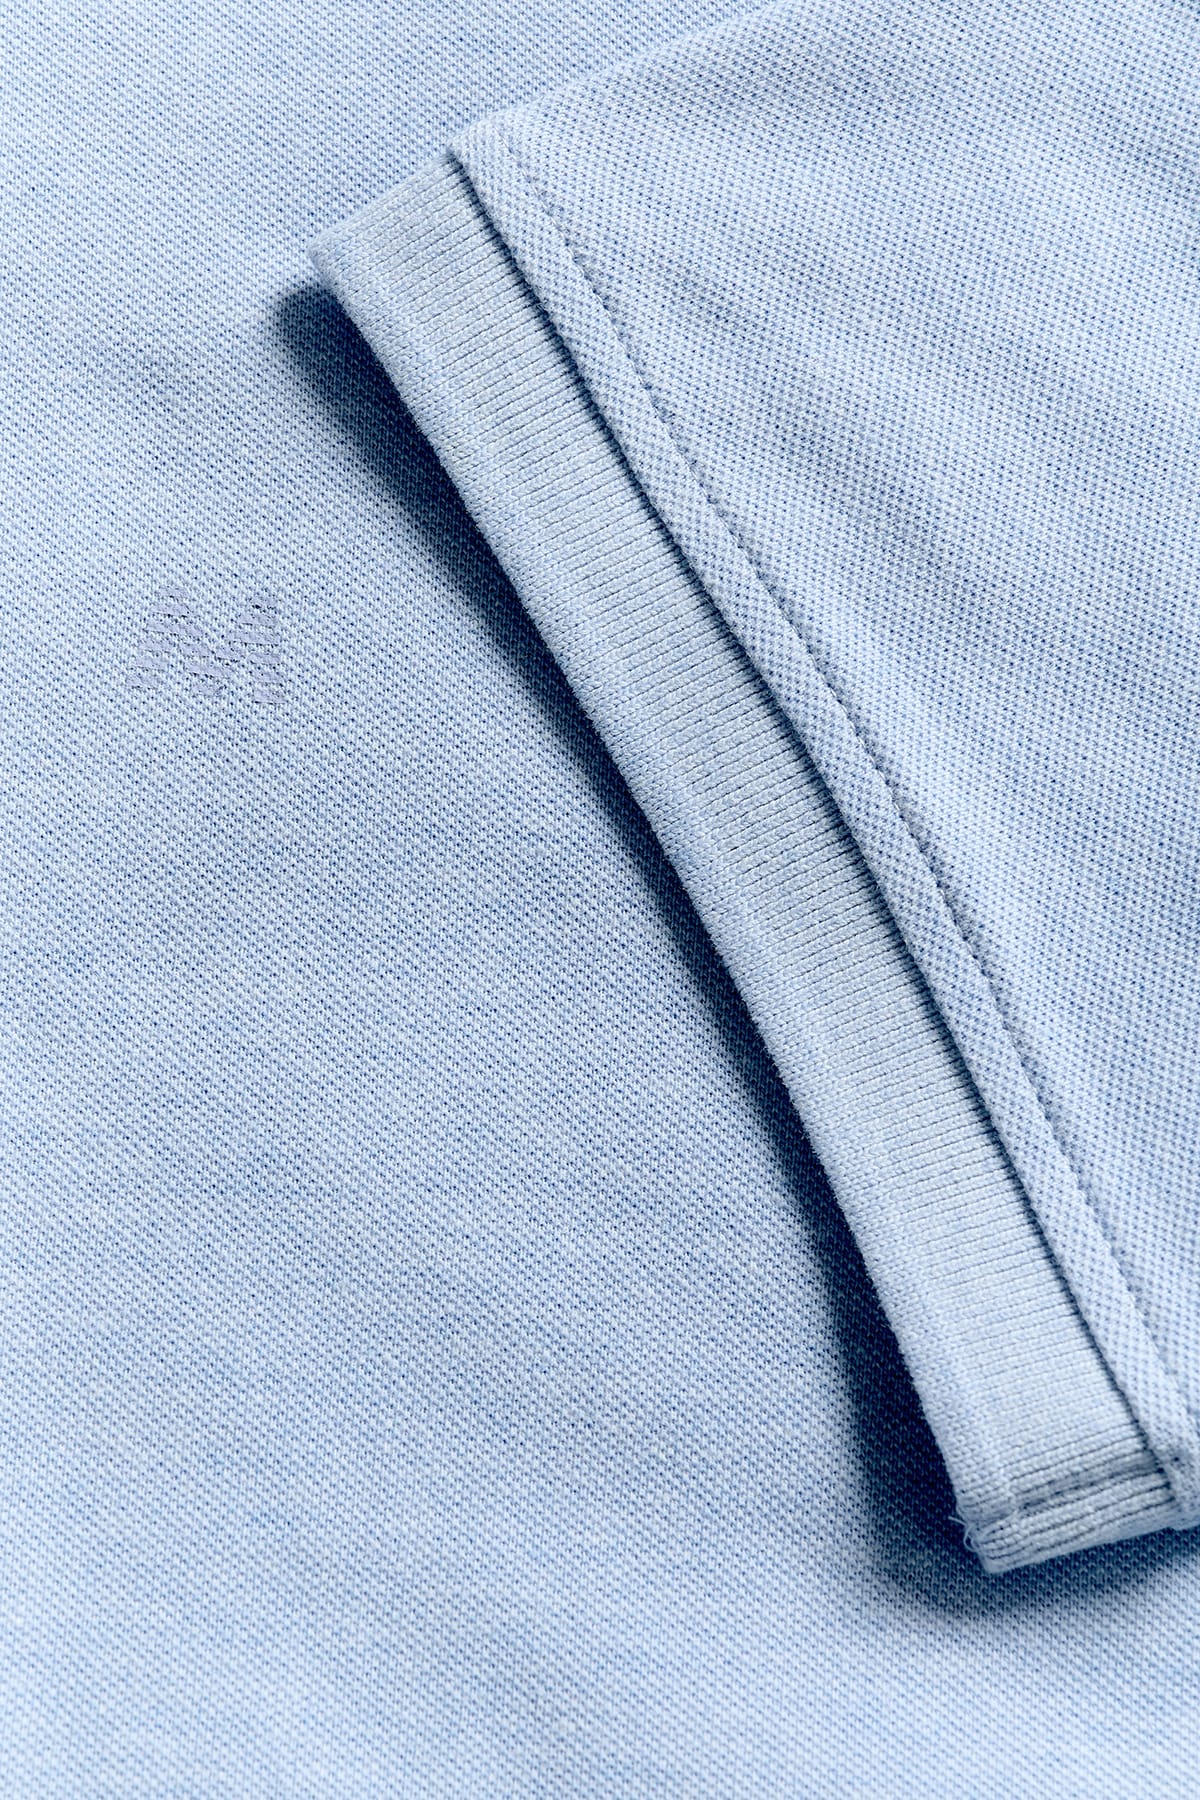 T-Shirt Polo MApoleo Melange Blissful Blue Melange T-Shirt Matinique 